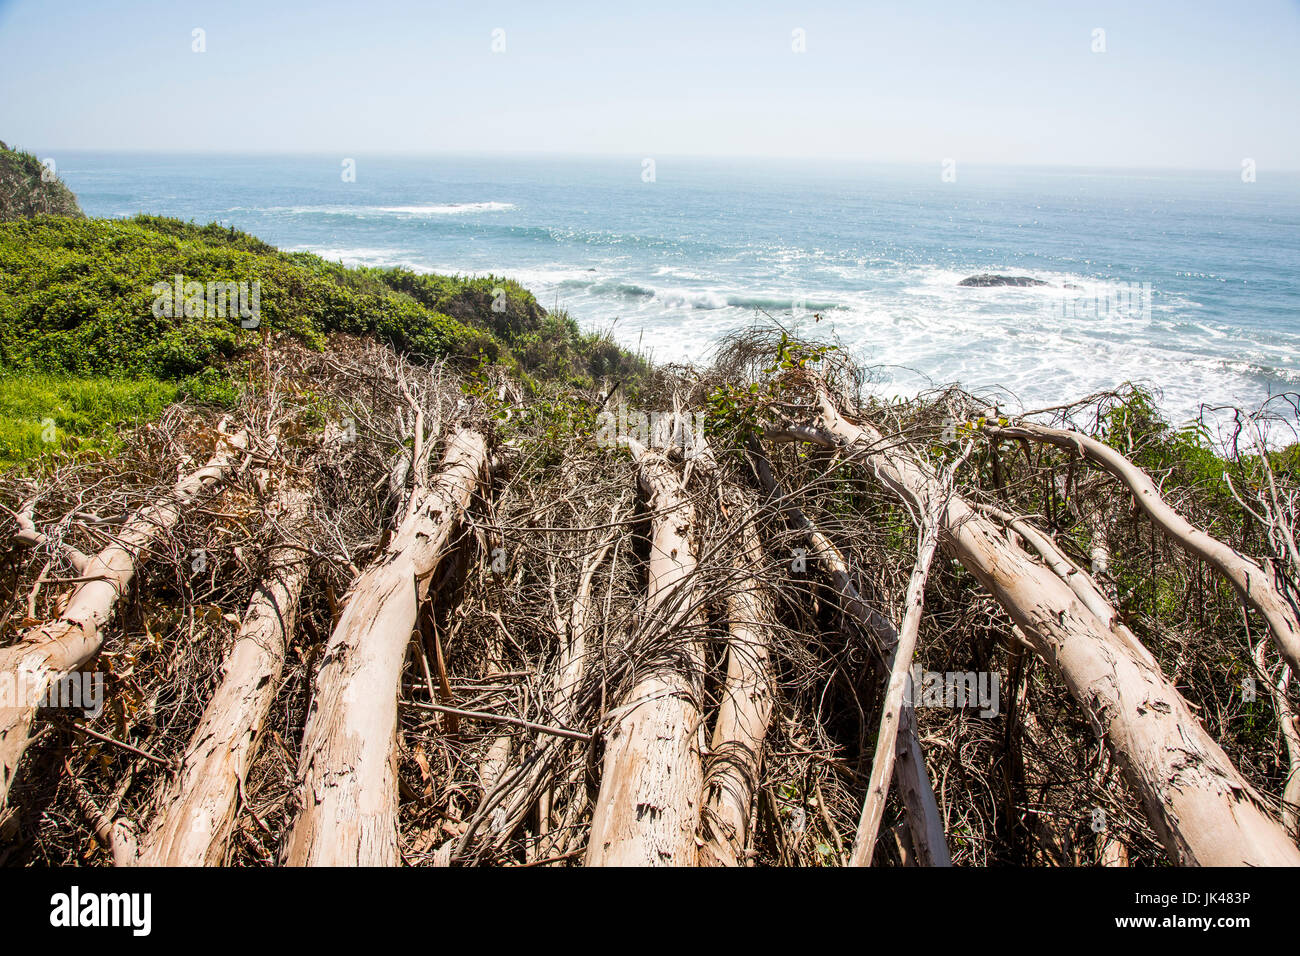 Logs near ocean beach Stock Photo